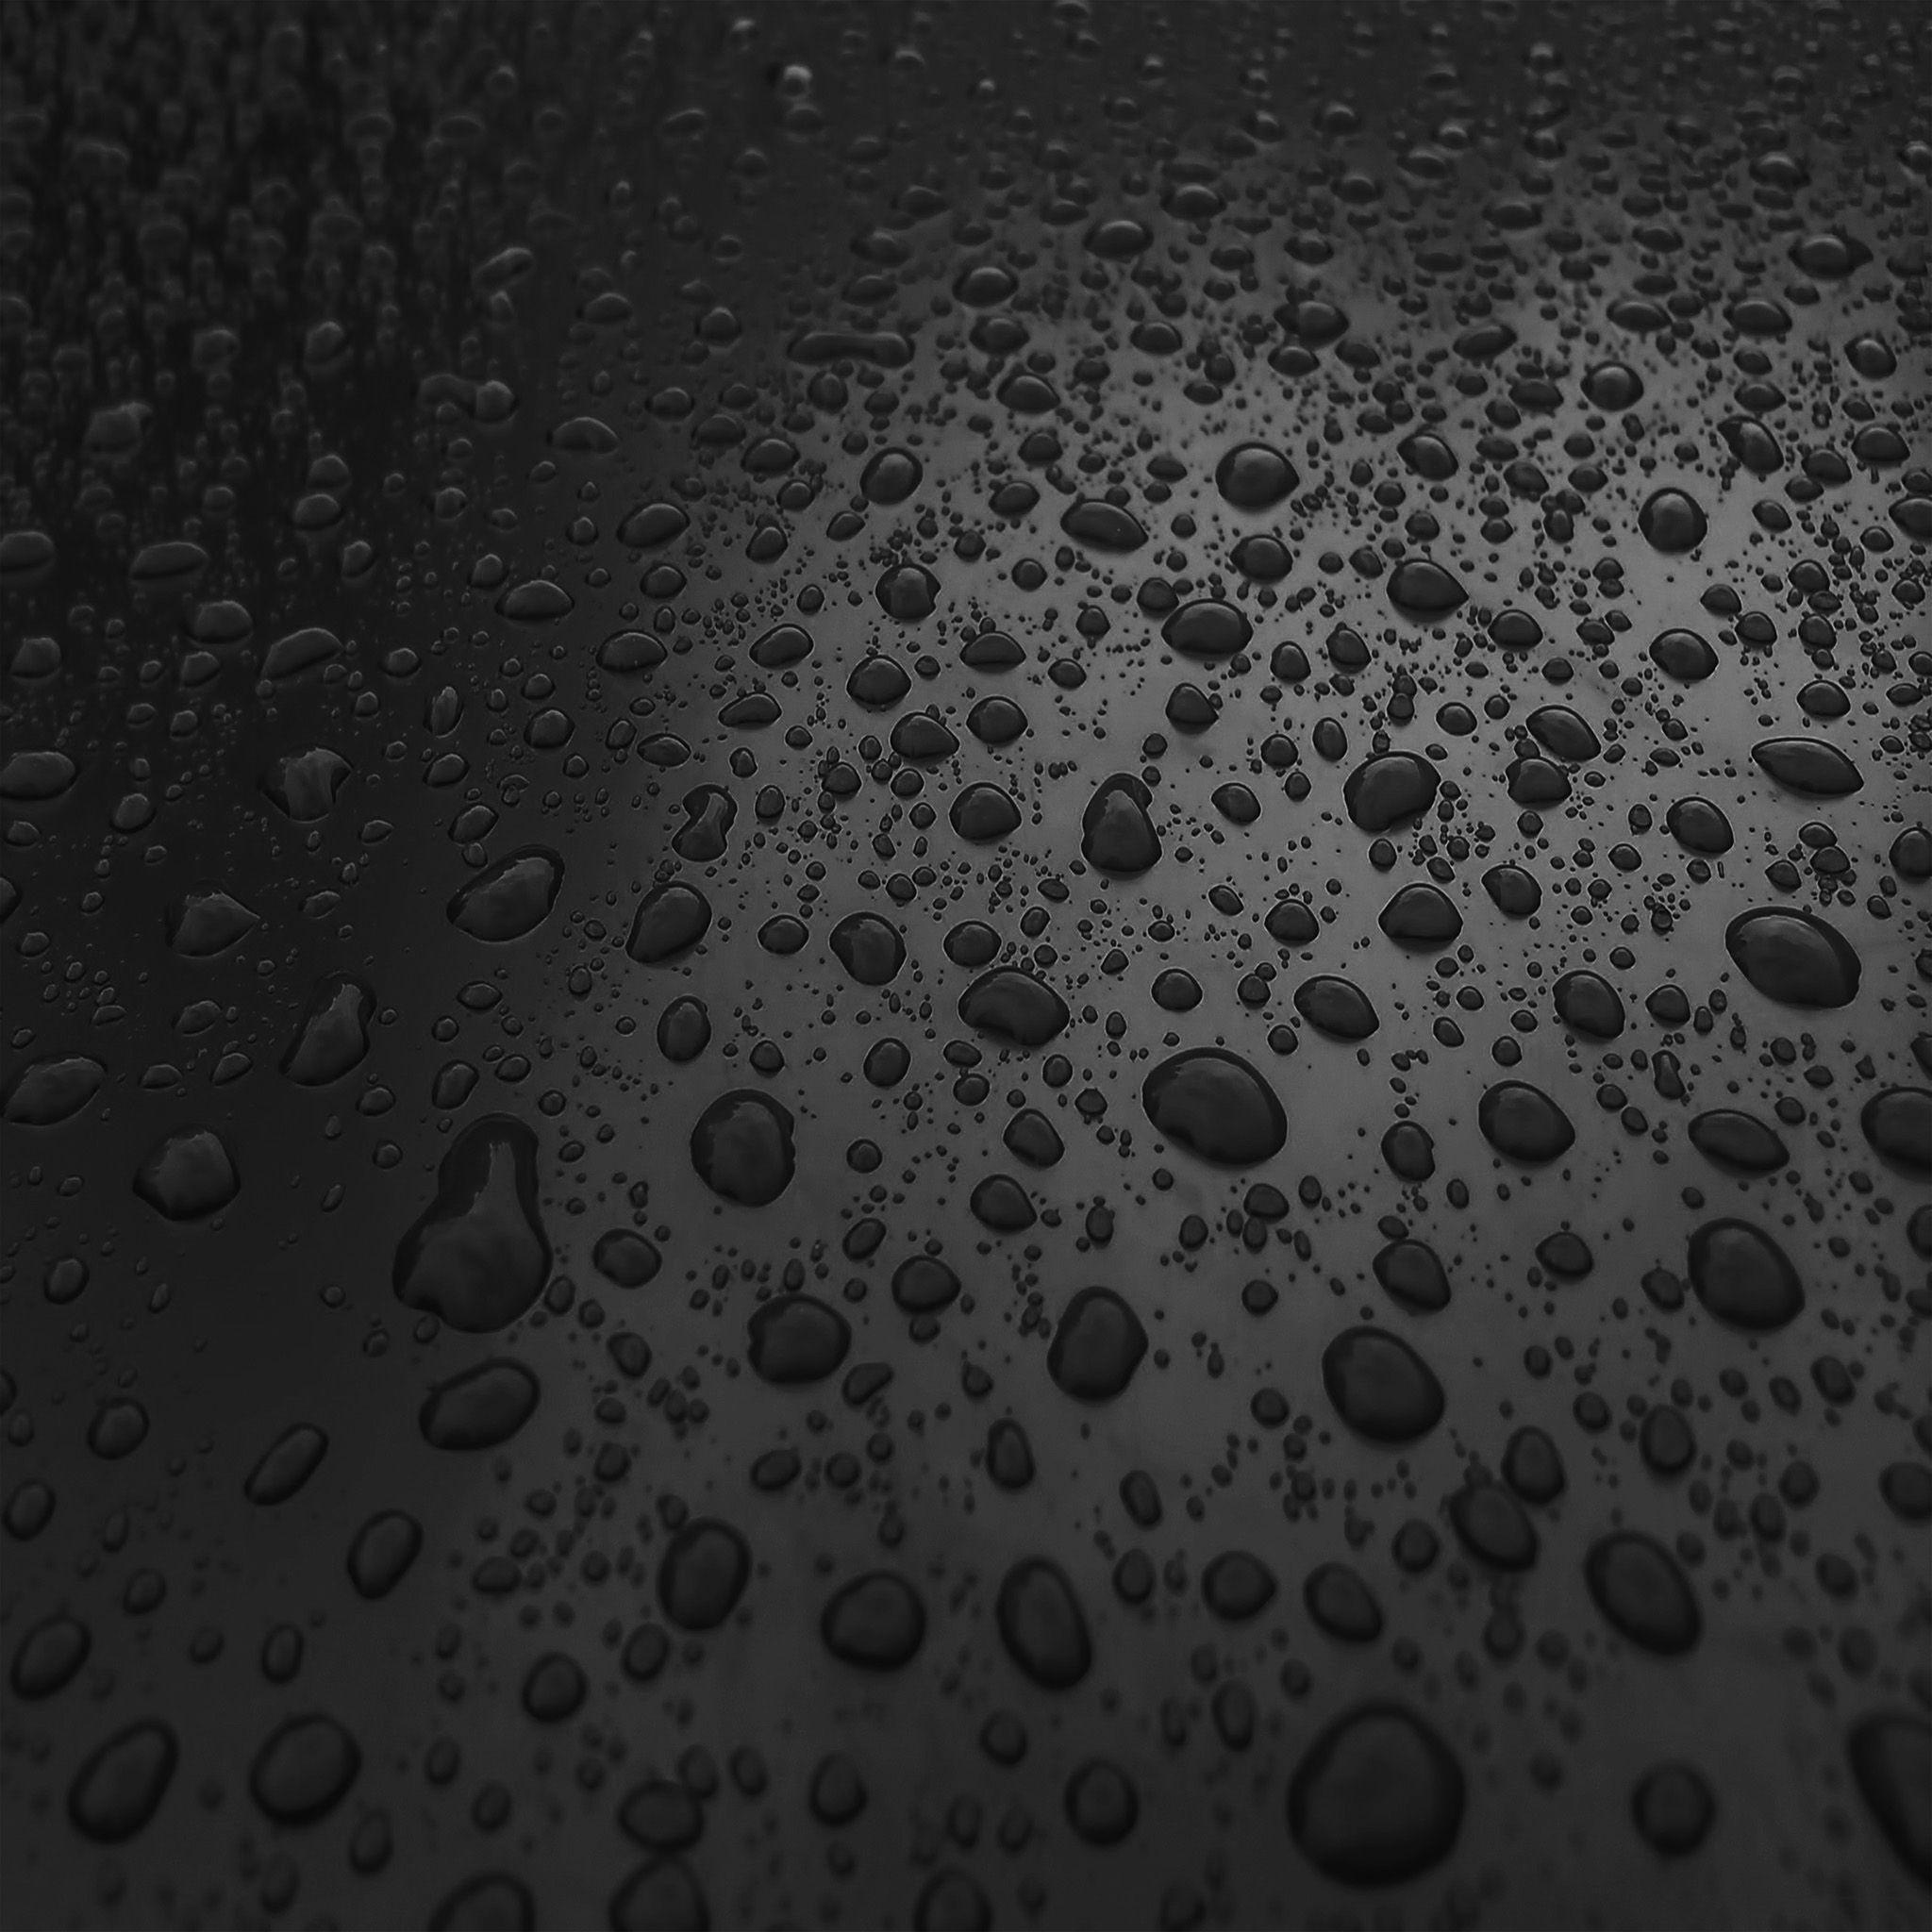 2048x2048 Giọt mưa thiên nhiên Dark Bw Sad Pattern Hình nền iPad Air